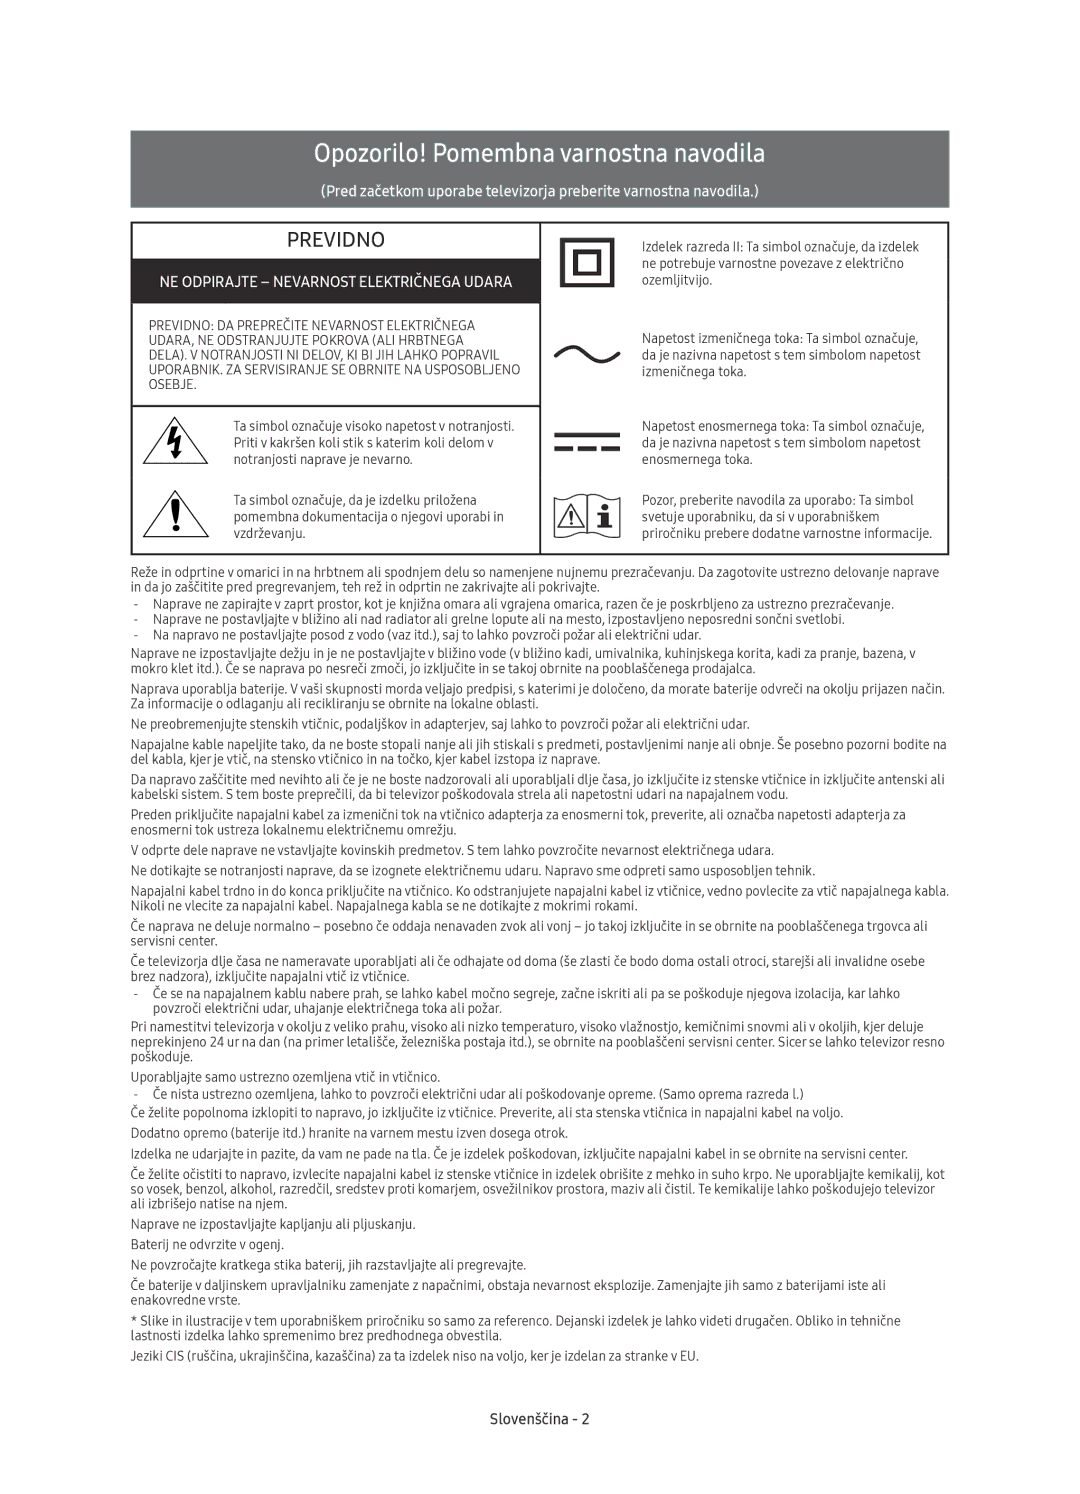 Samsung UE78KU6500SXXH Opozorilo! Pomembna varnostna navodila, NE Odpirajte Nevarnost Električnega Udara, Slovenščina 